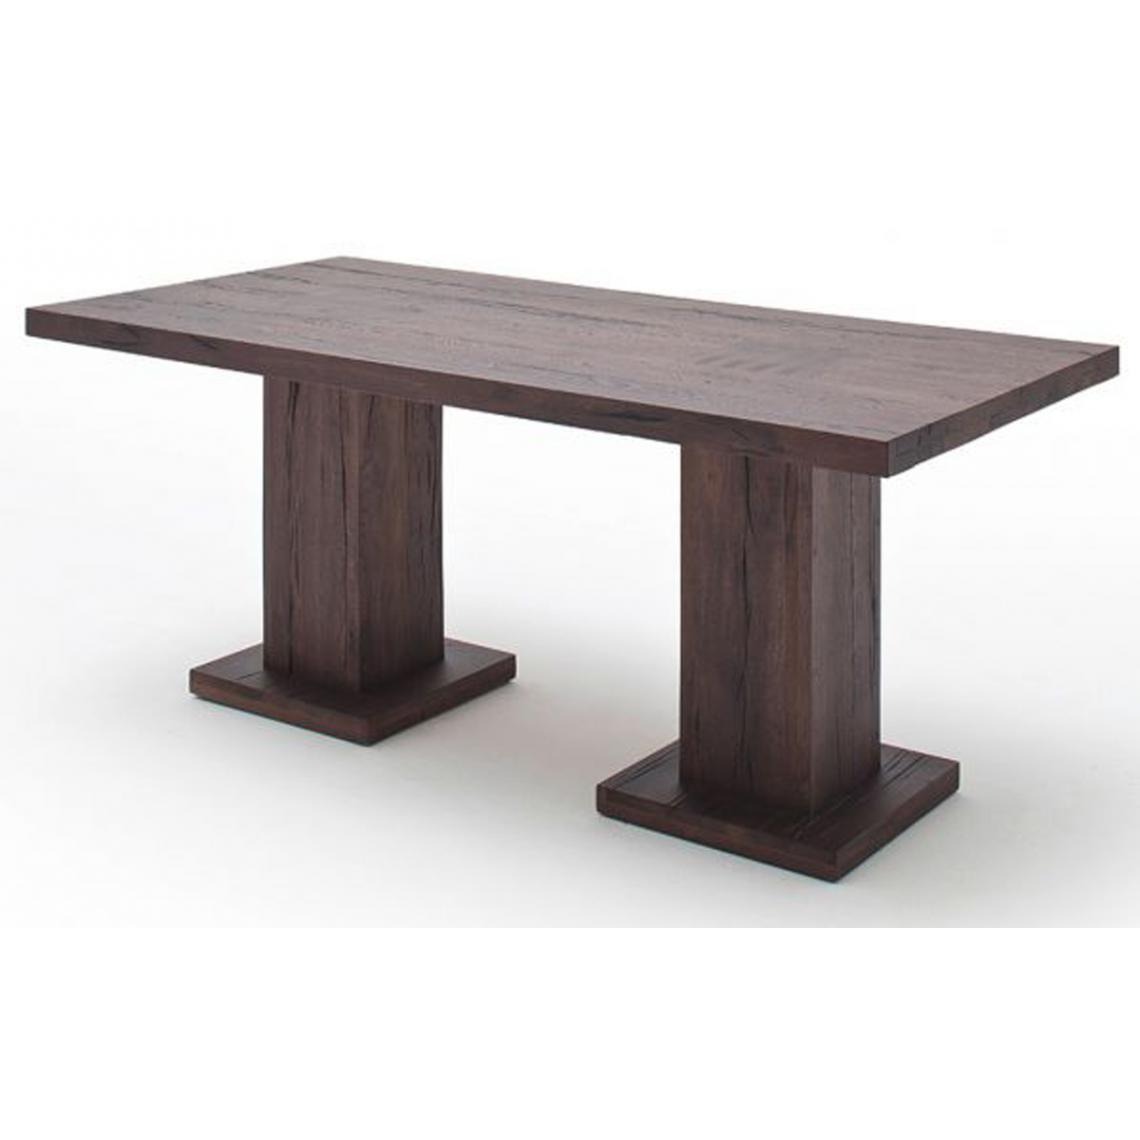 Pegane - Table à manger en chêne massif patiné laqué avec 2 colonnes - L.260 x H.76 x P.100 cm -PEGANE- - Tables à manger